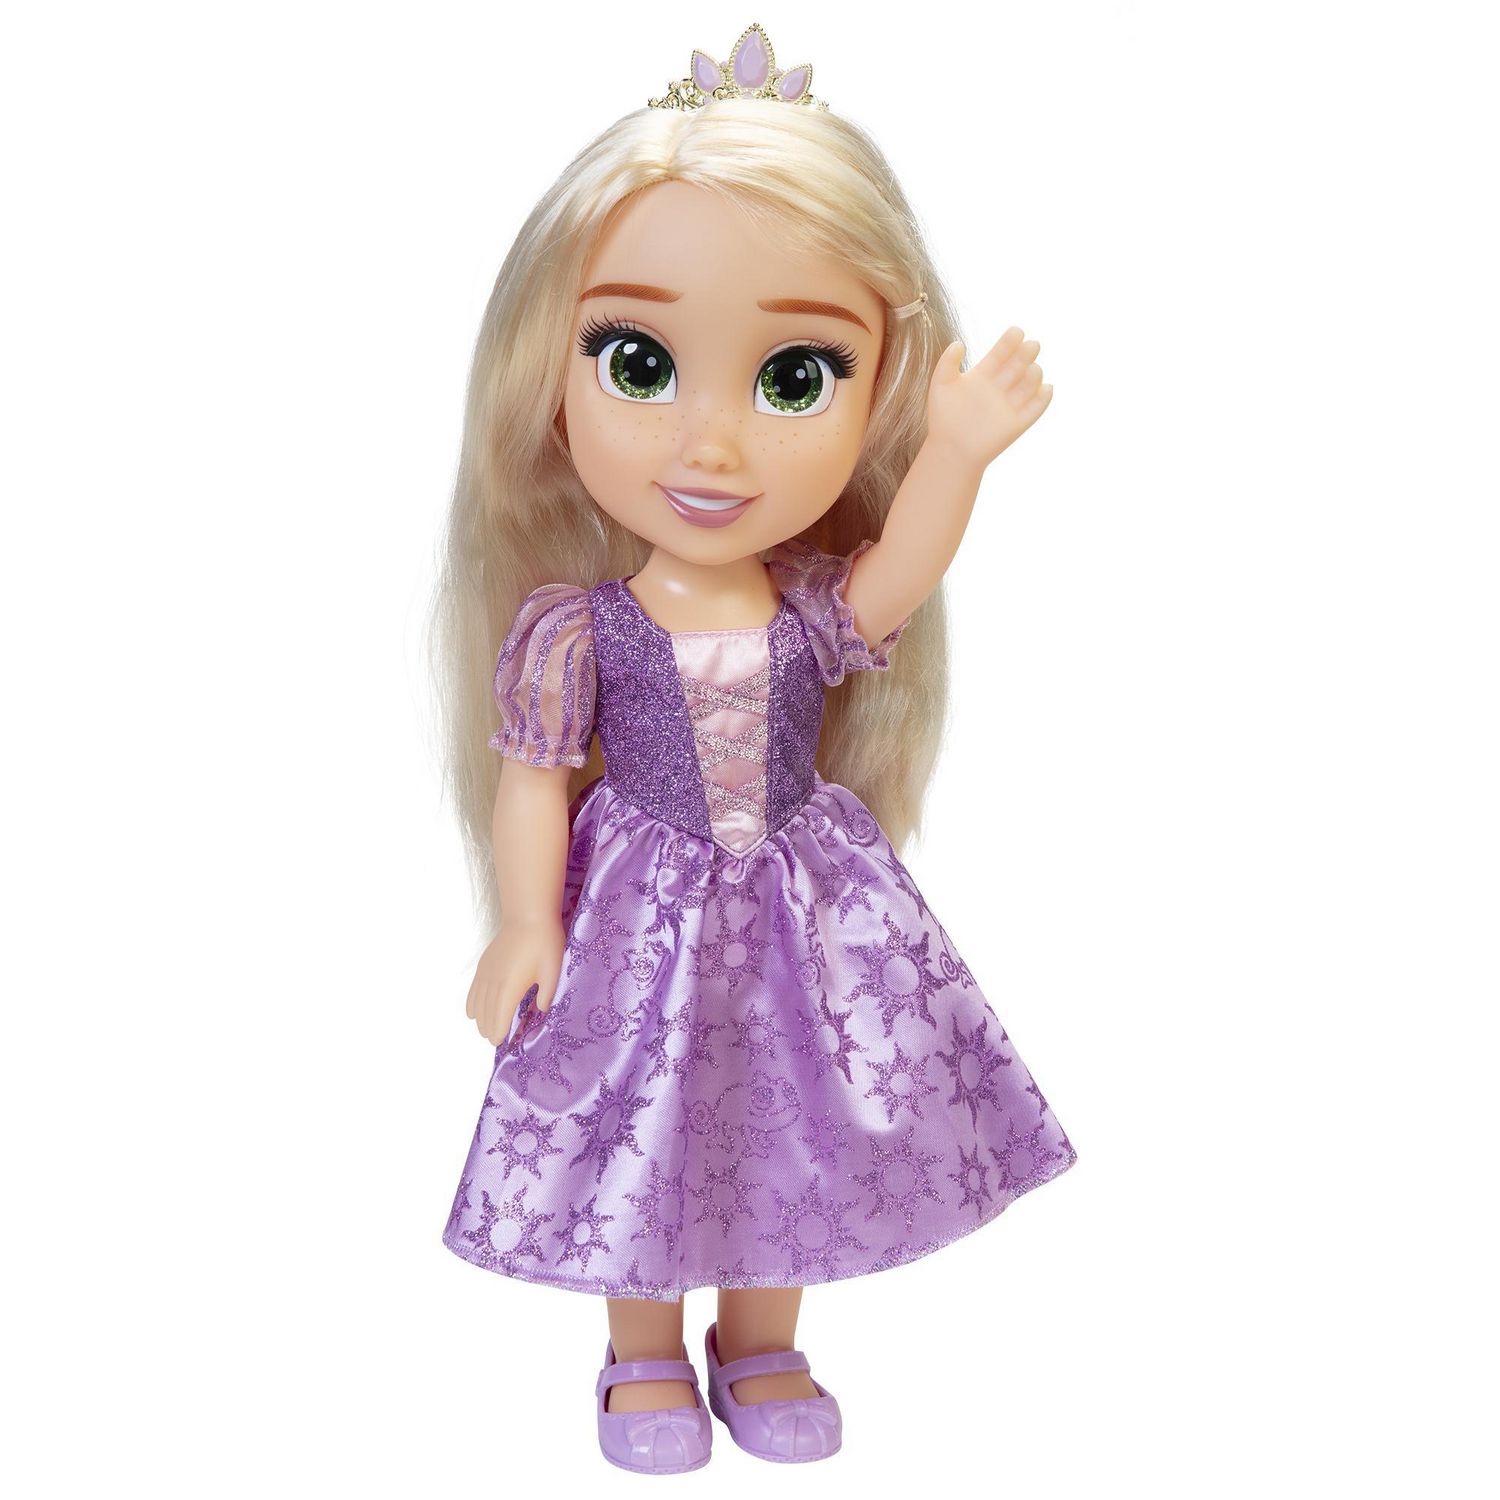 Disney Princess My Friend Rapunzel Doll Walmart Canada